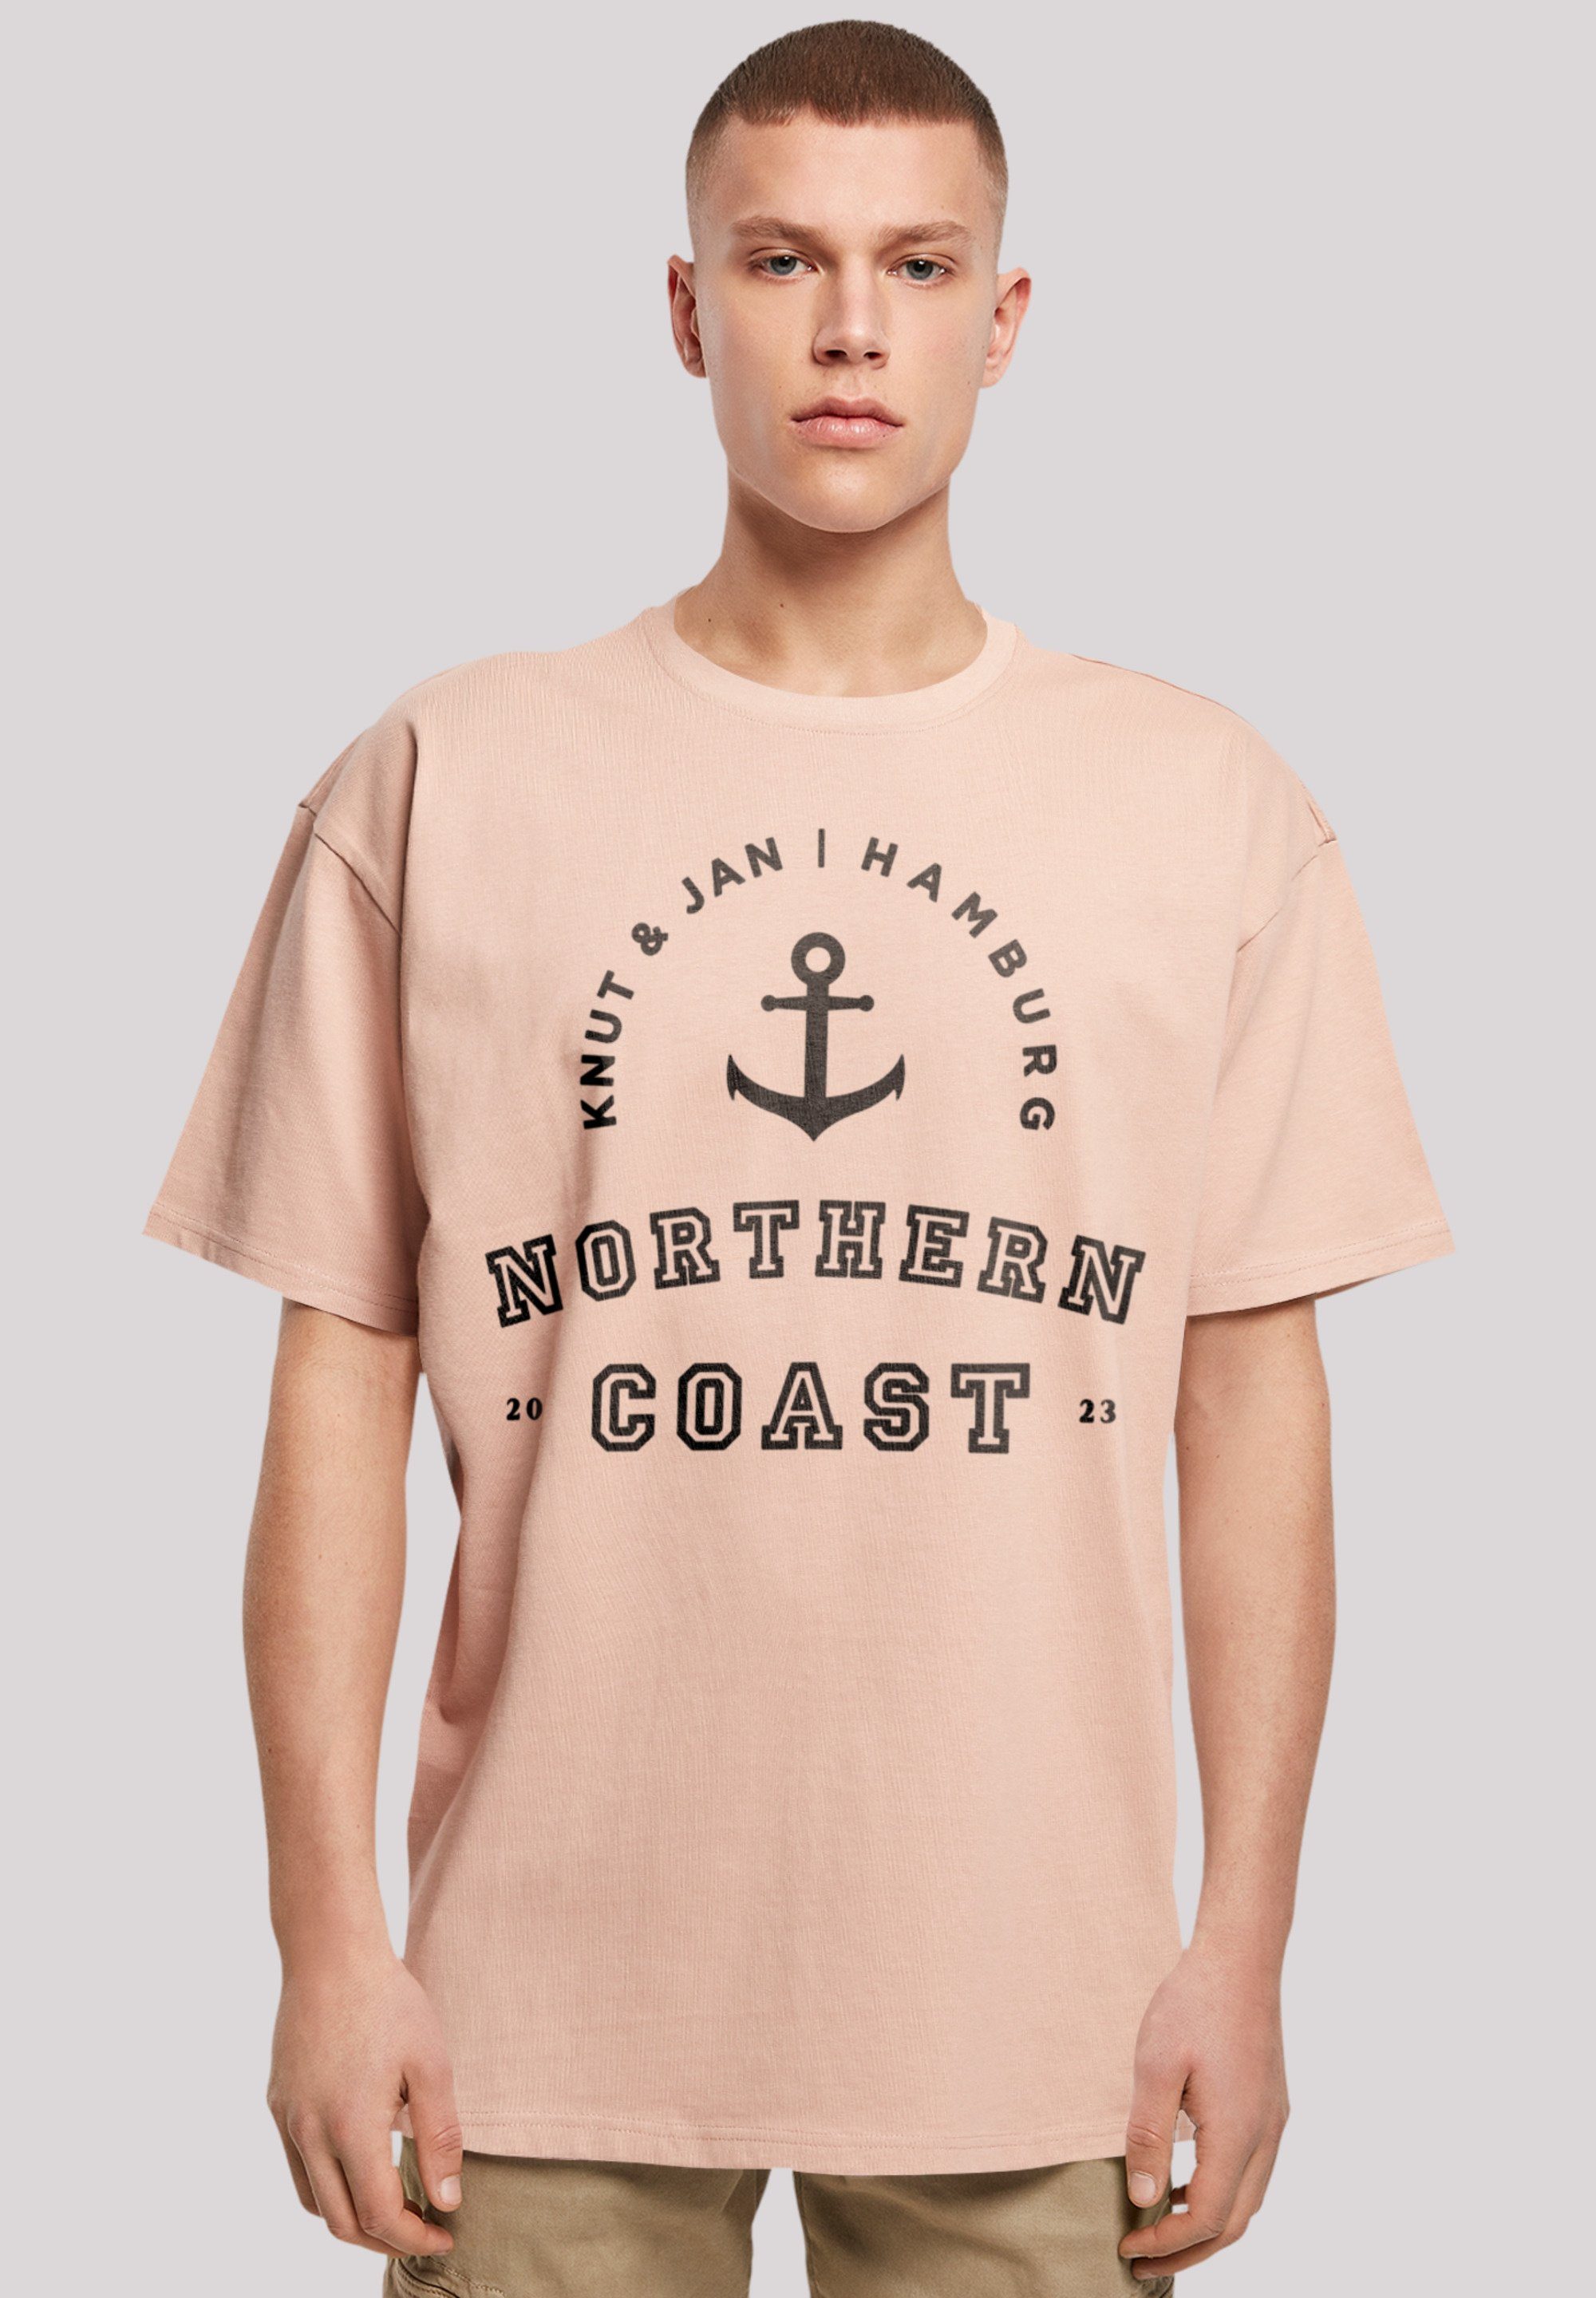 Knut Jan & F4NT4STIC T-Shirt Nordsee Northern Hamburg amber Print Coast